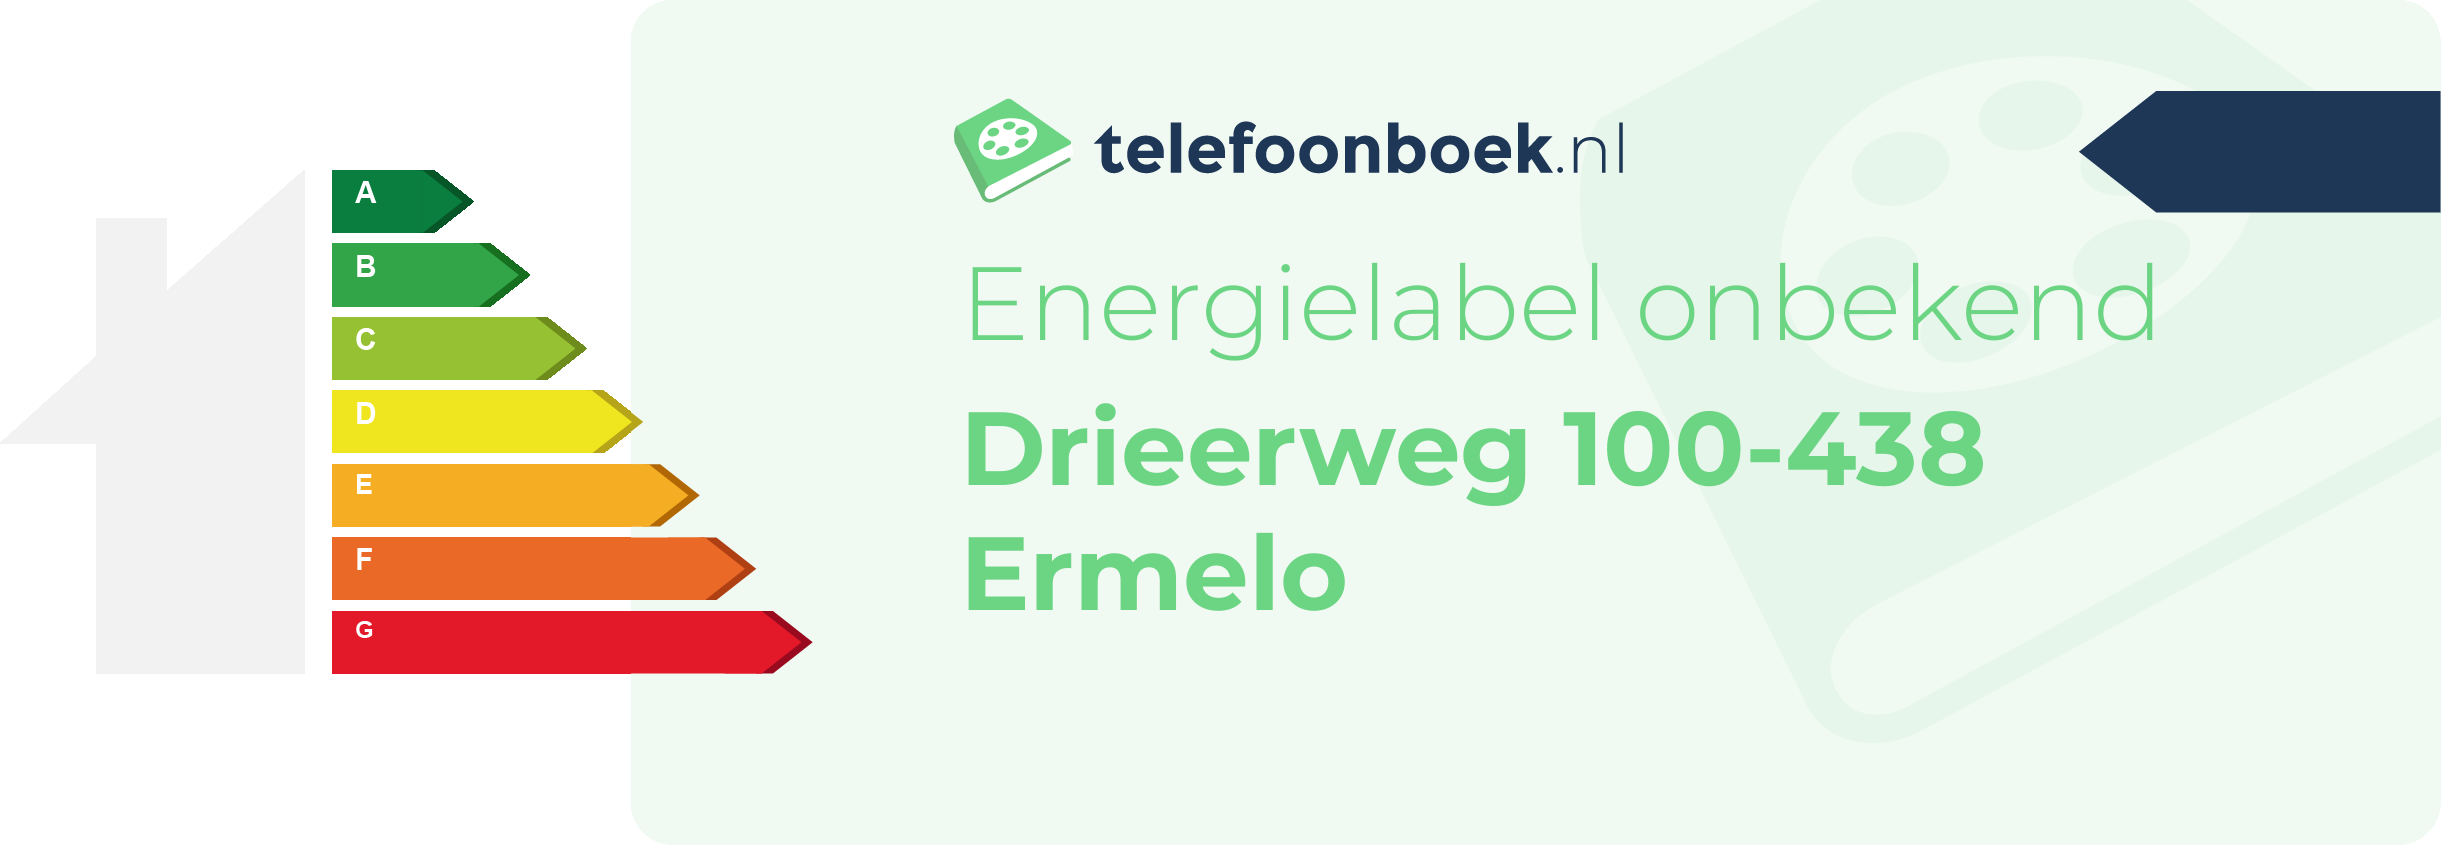 Energielabel Drieerweg 100-438 Ermelo